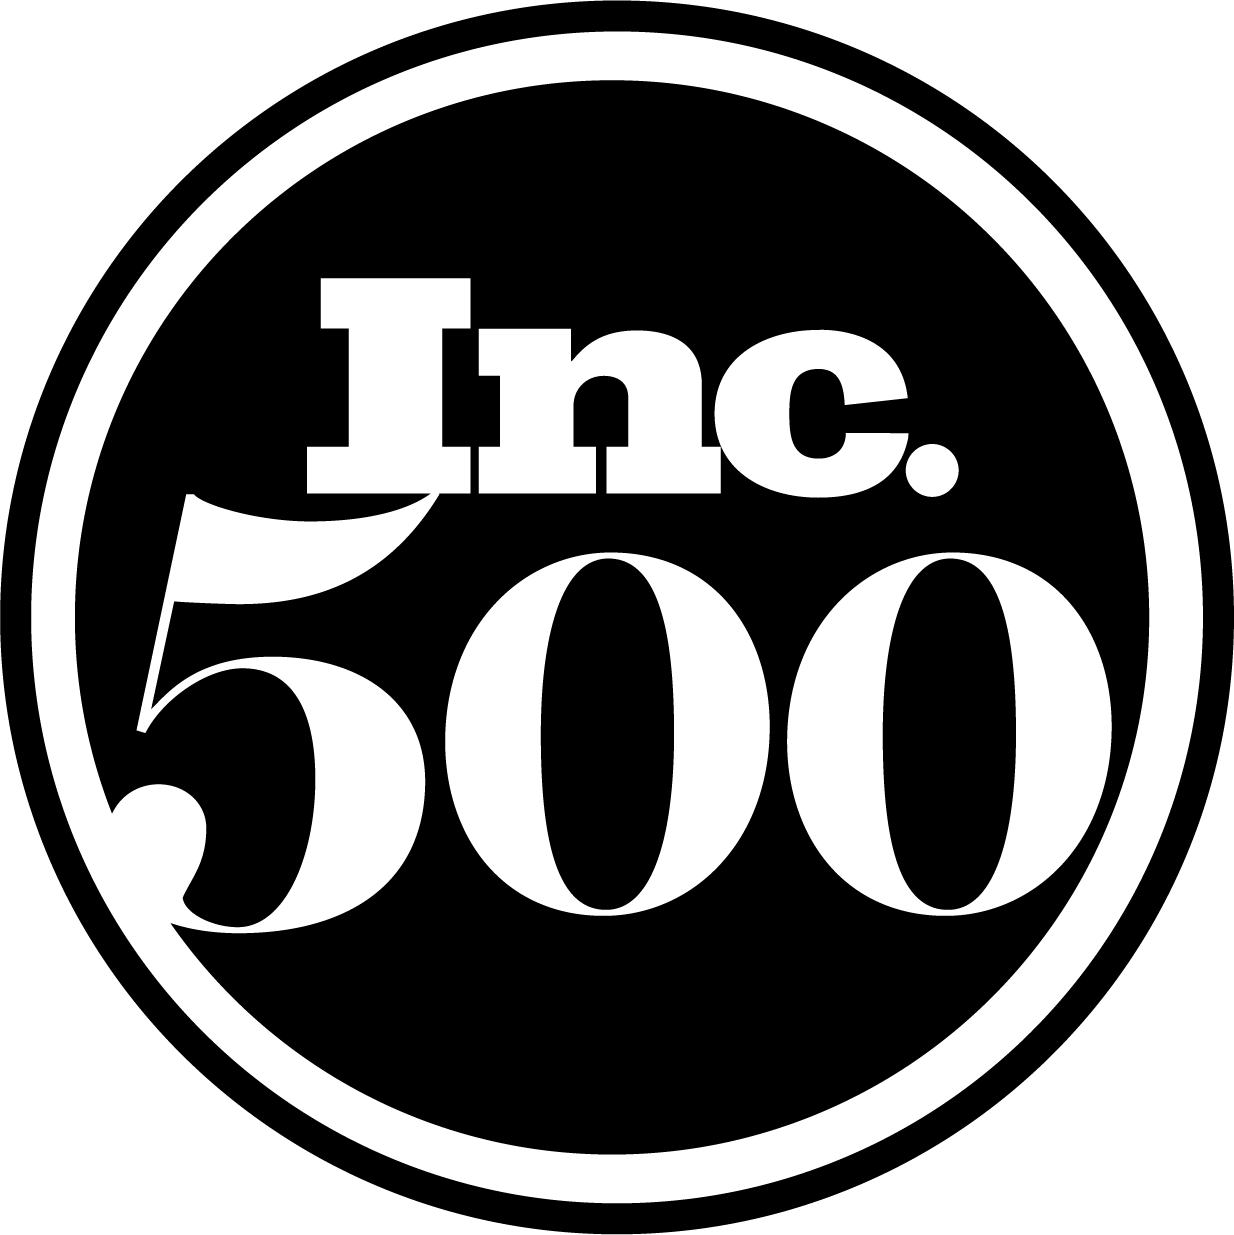 inc 500 logo vector